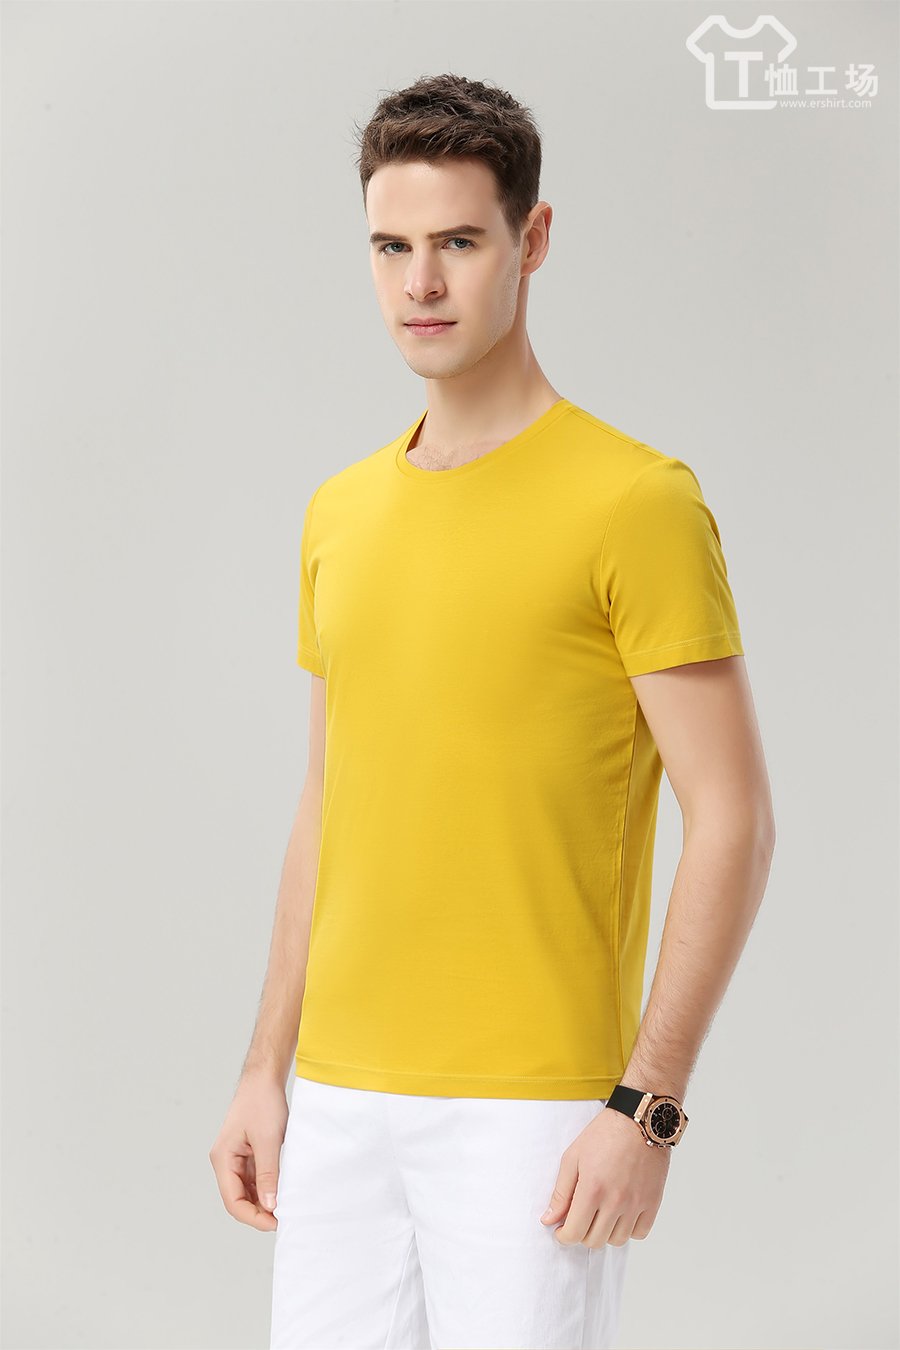 高档黄色T恤4